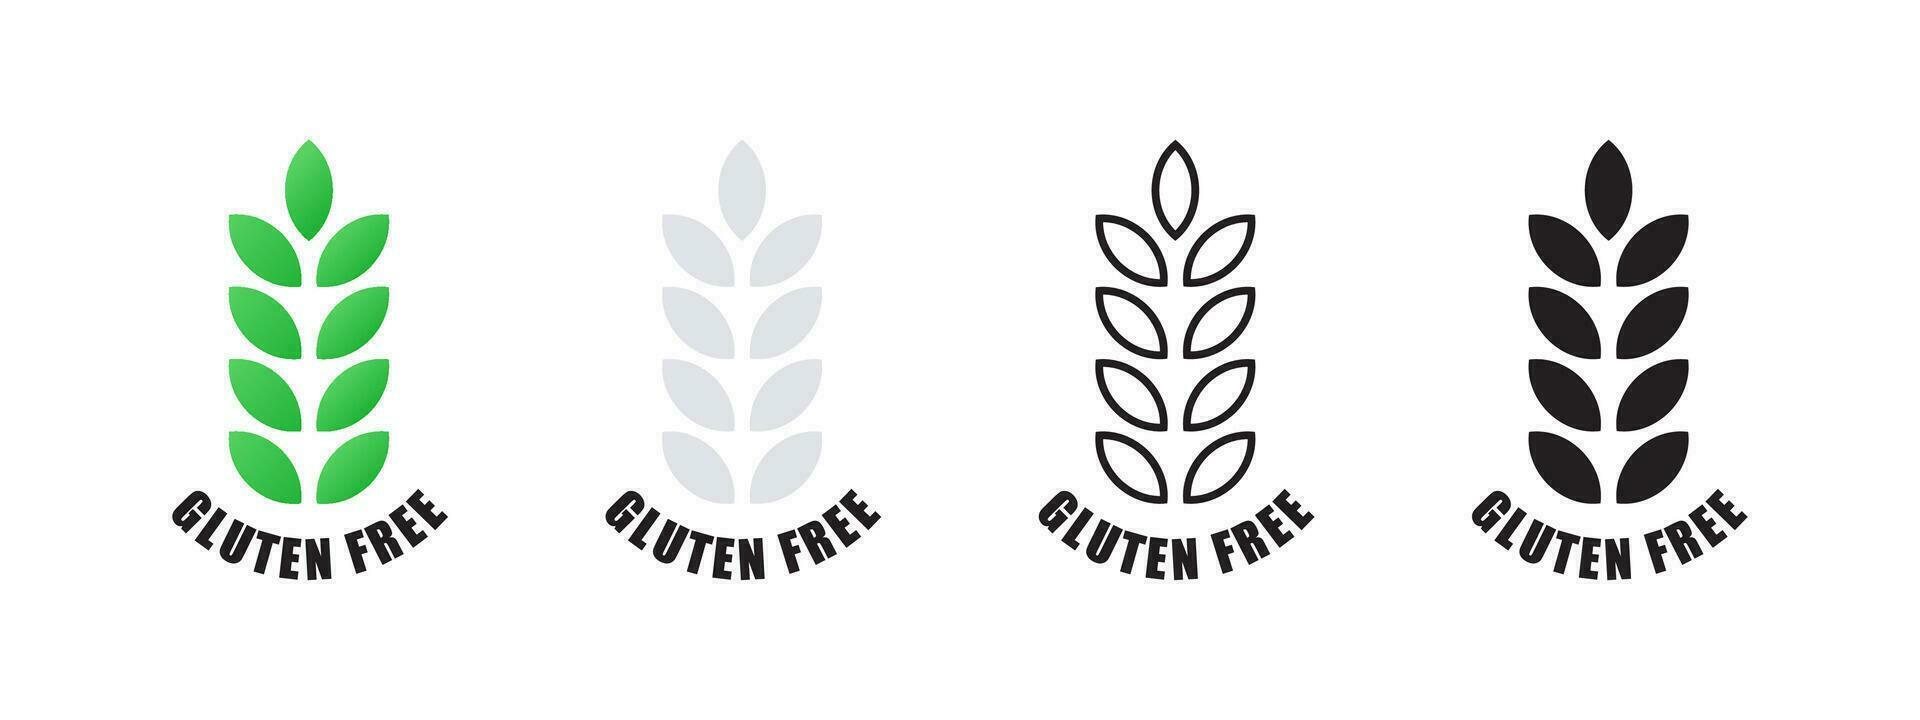 gluten gratis. producto ese lo hace no Contiene gluten. natural y orgánico alimentos vector escalable gráficos